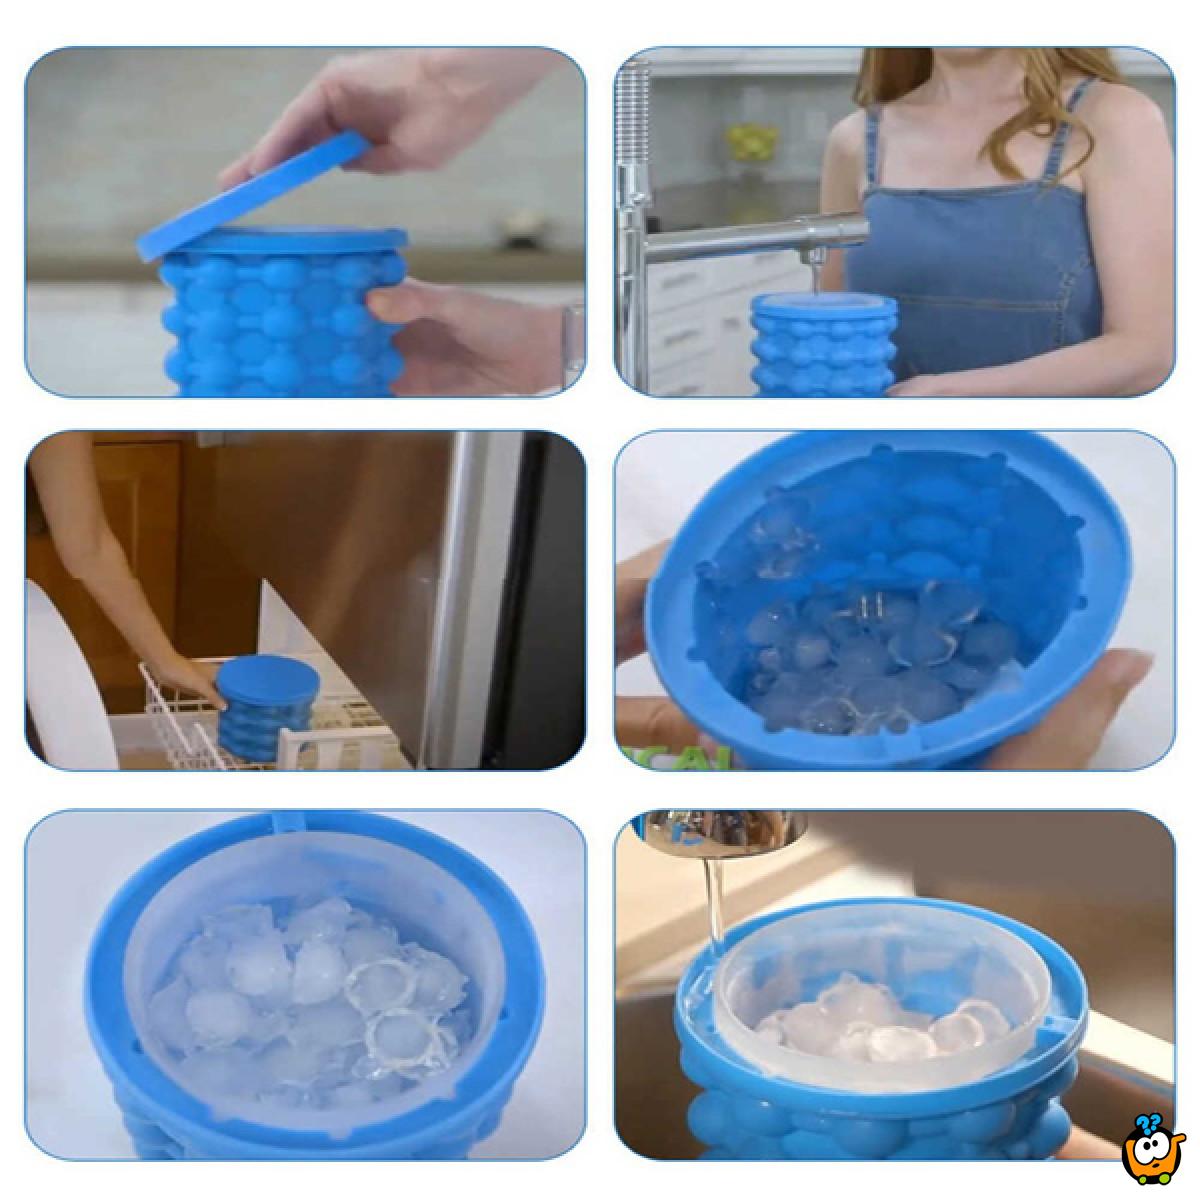 Ice cube maker - 2u1 kalup za pravljenje i serviranje leda